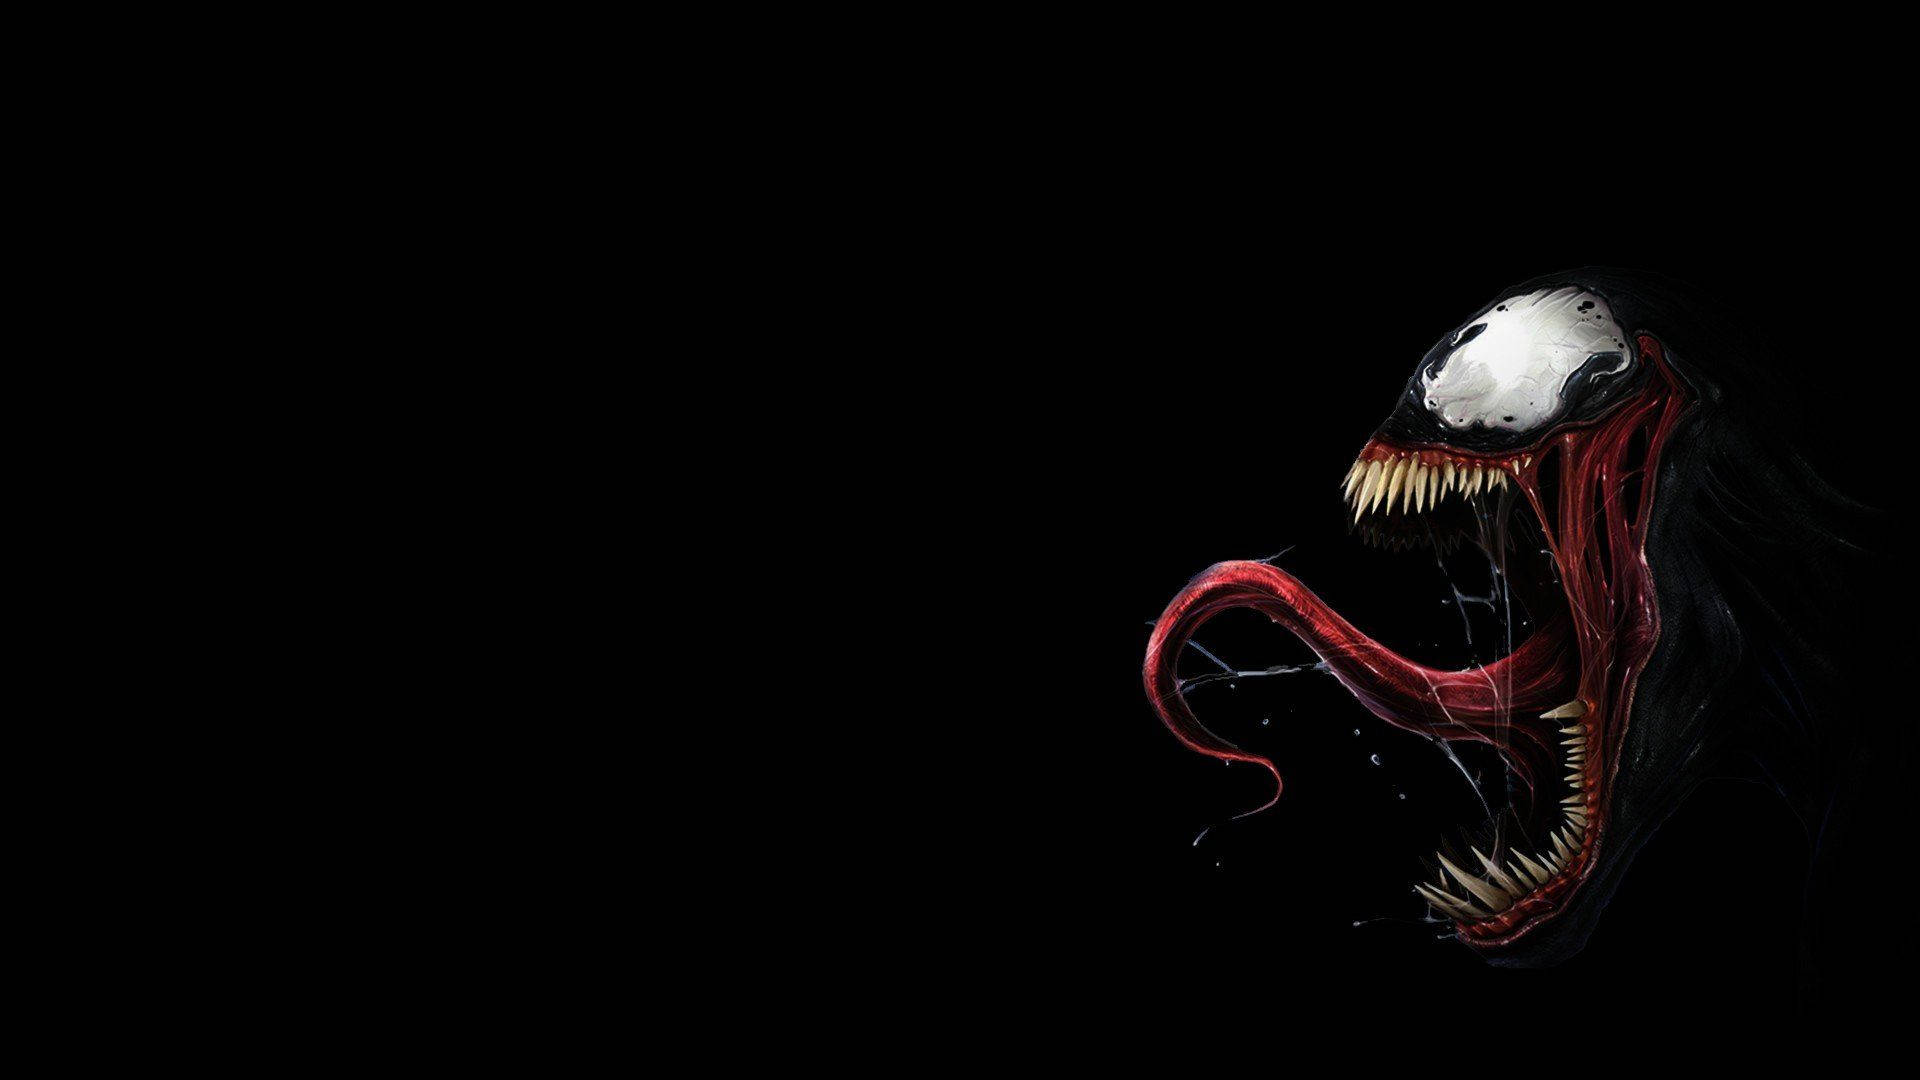 Alien Symbiote Venom Mouth Background